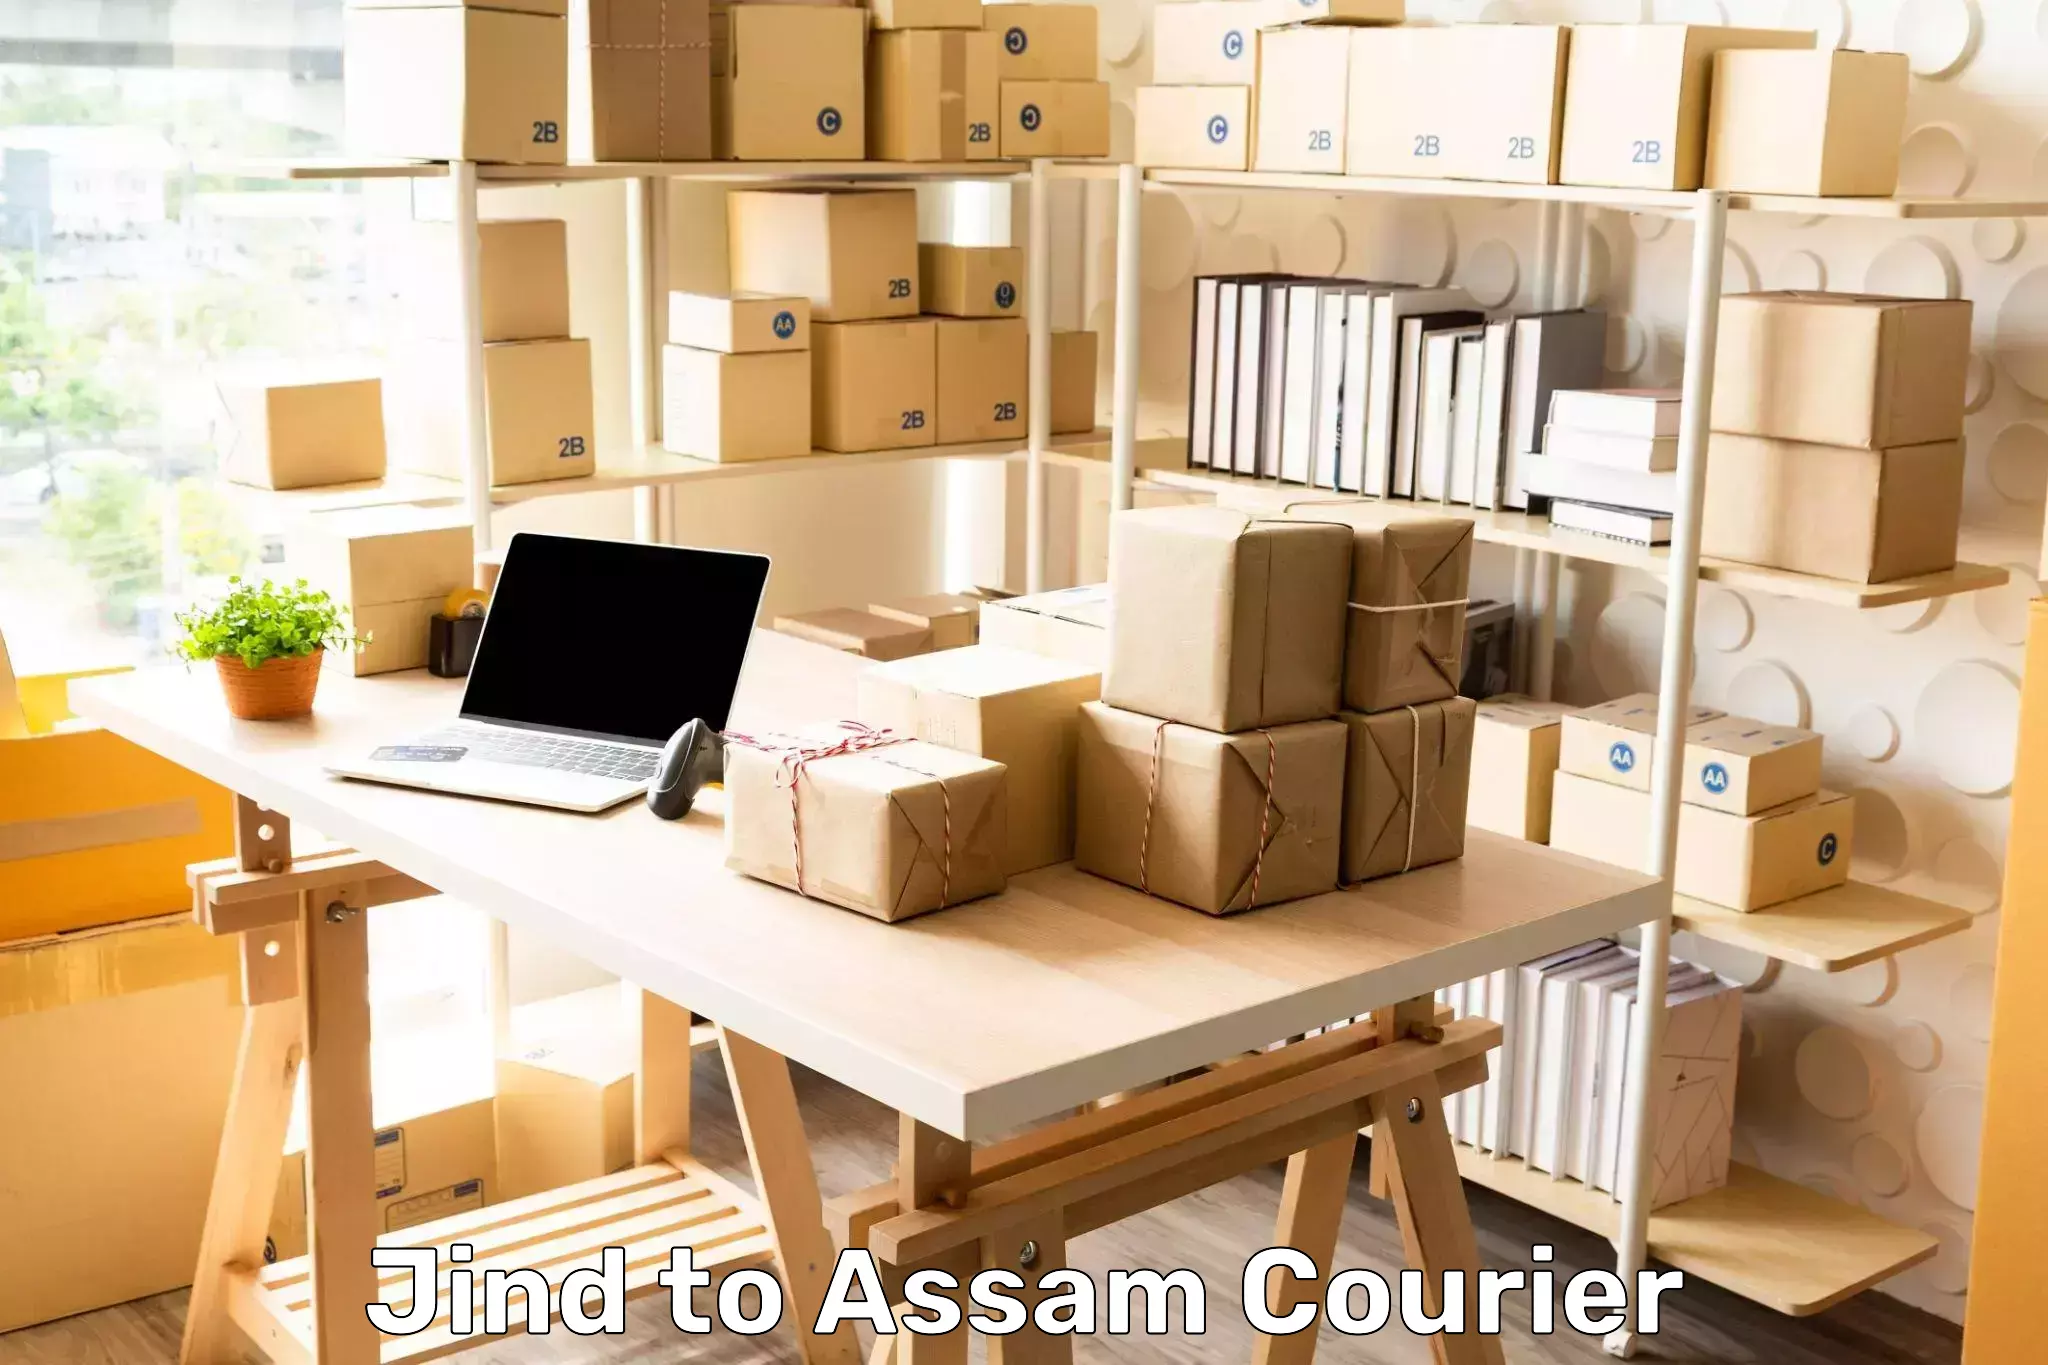 Residential courier service Jind to Badarpur Karimganj